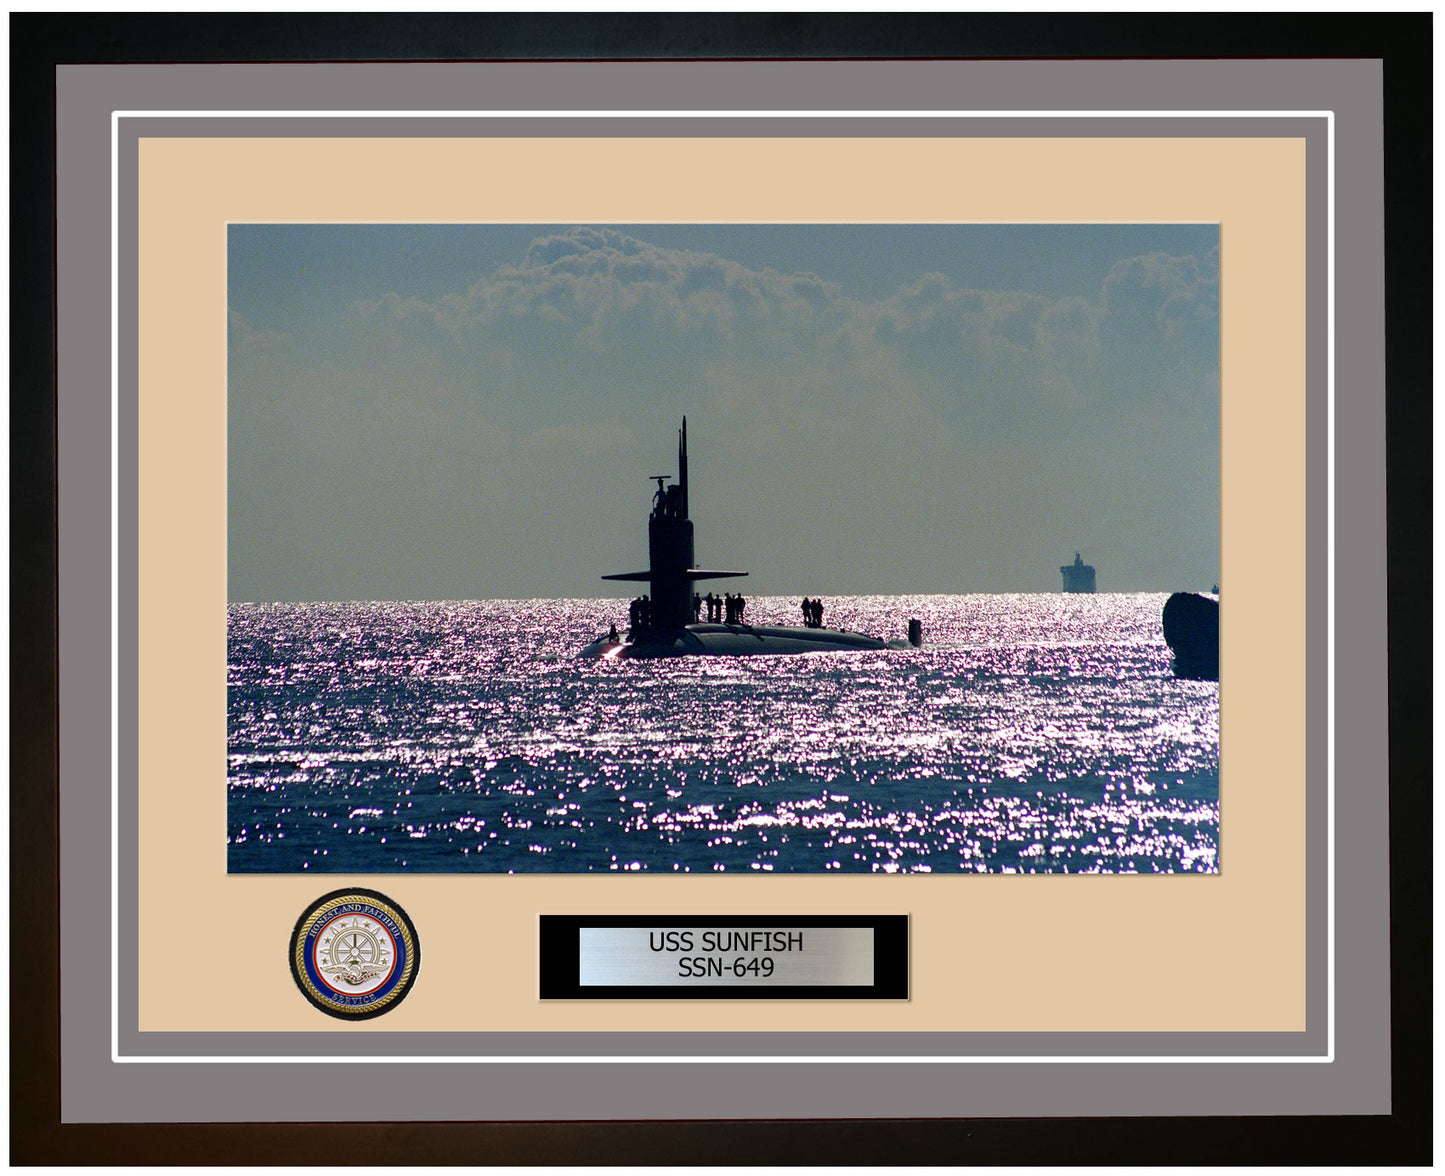 USS Sunfish SSN-649 Framed Navy Ship Photo Grey